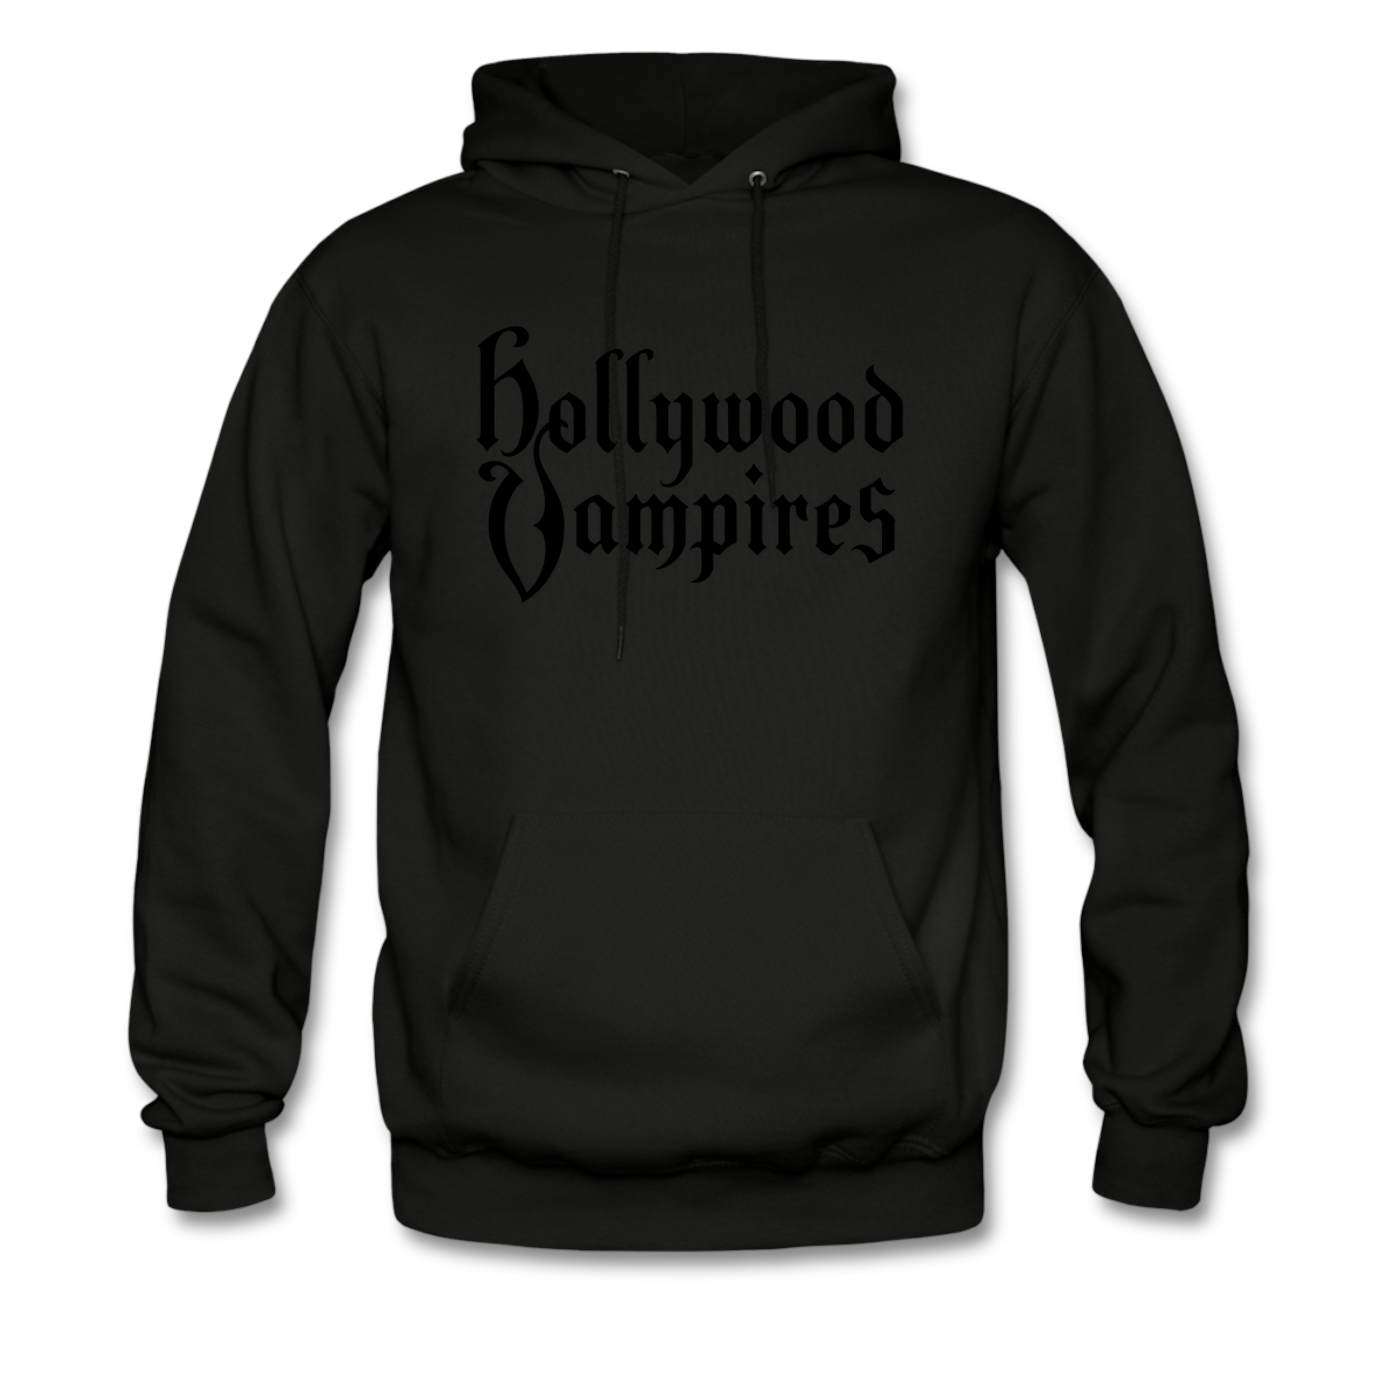 Hollywood Vampires Black on Black (hoodie)